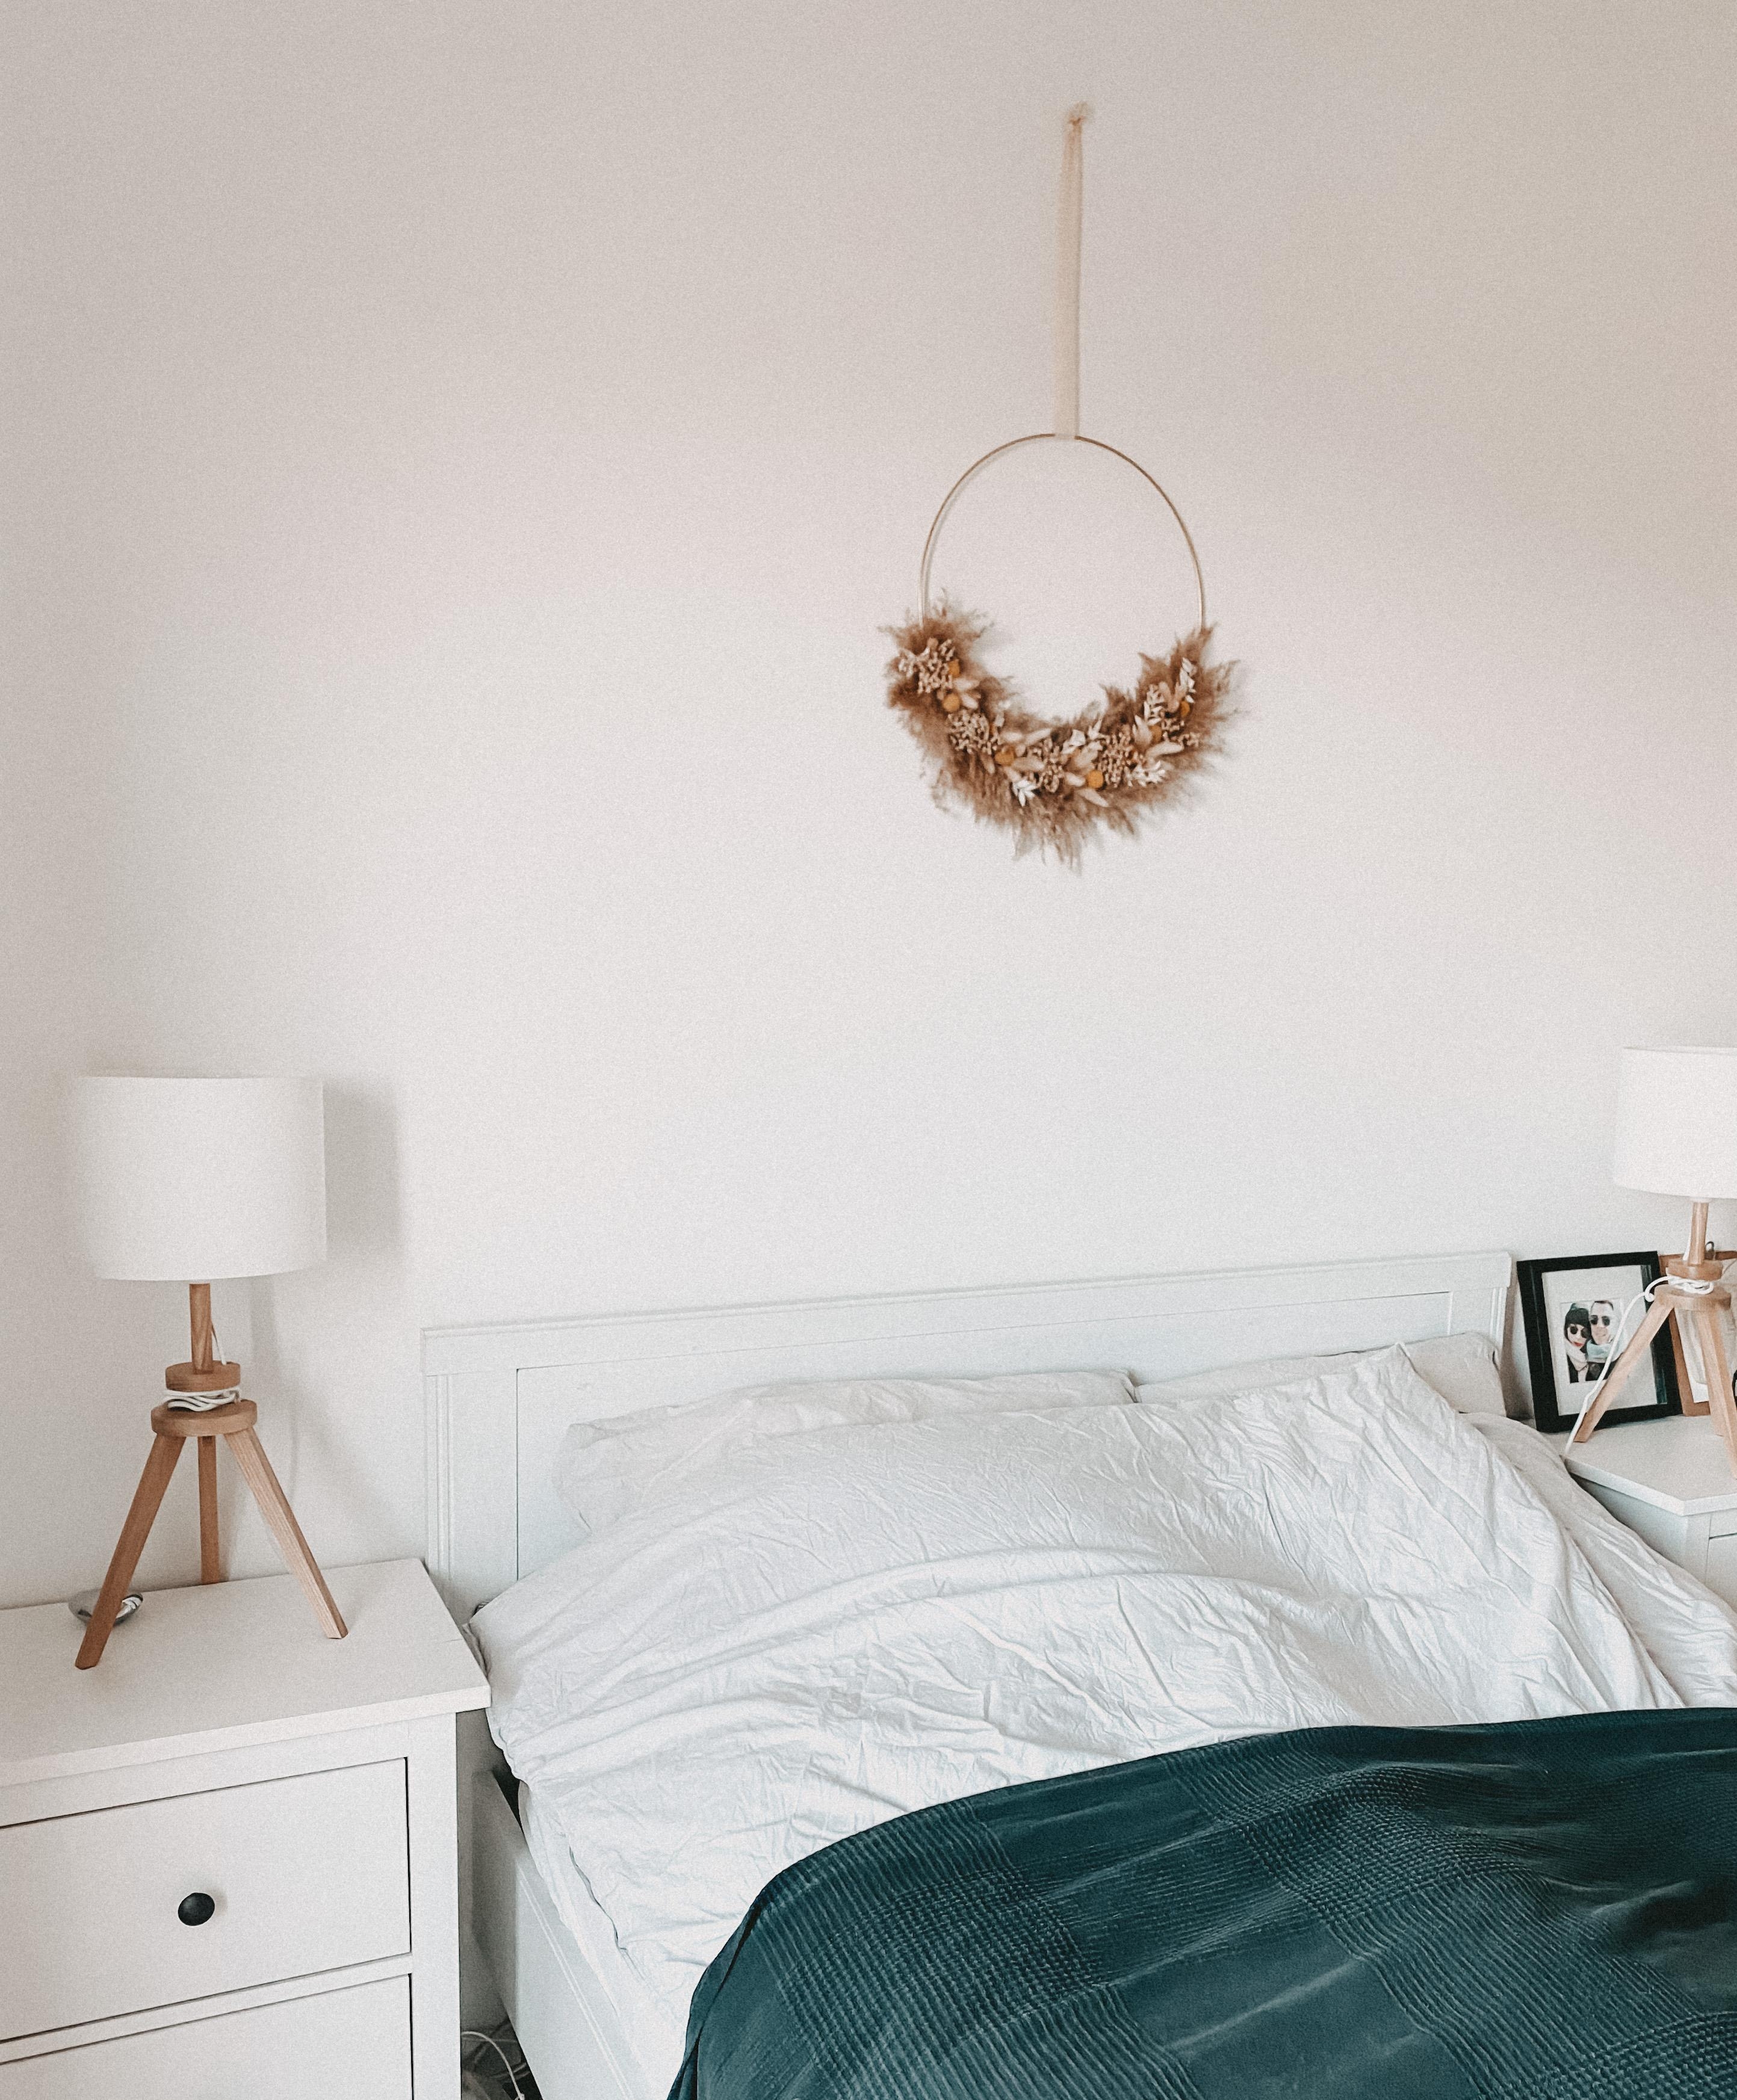 Neues Schlafzimmer/Neue Wohnung! 
Kranz-Liebe 🖤 

#bedroom#newbedroom#Blumenkranz#Trockenblumen#kranzliebe